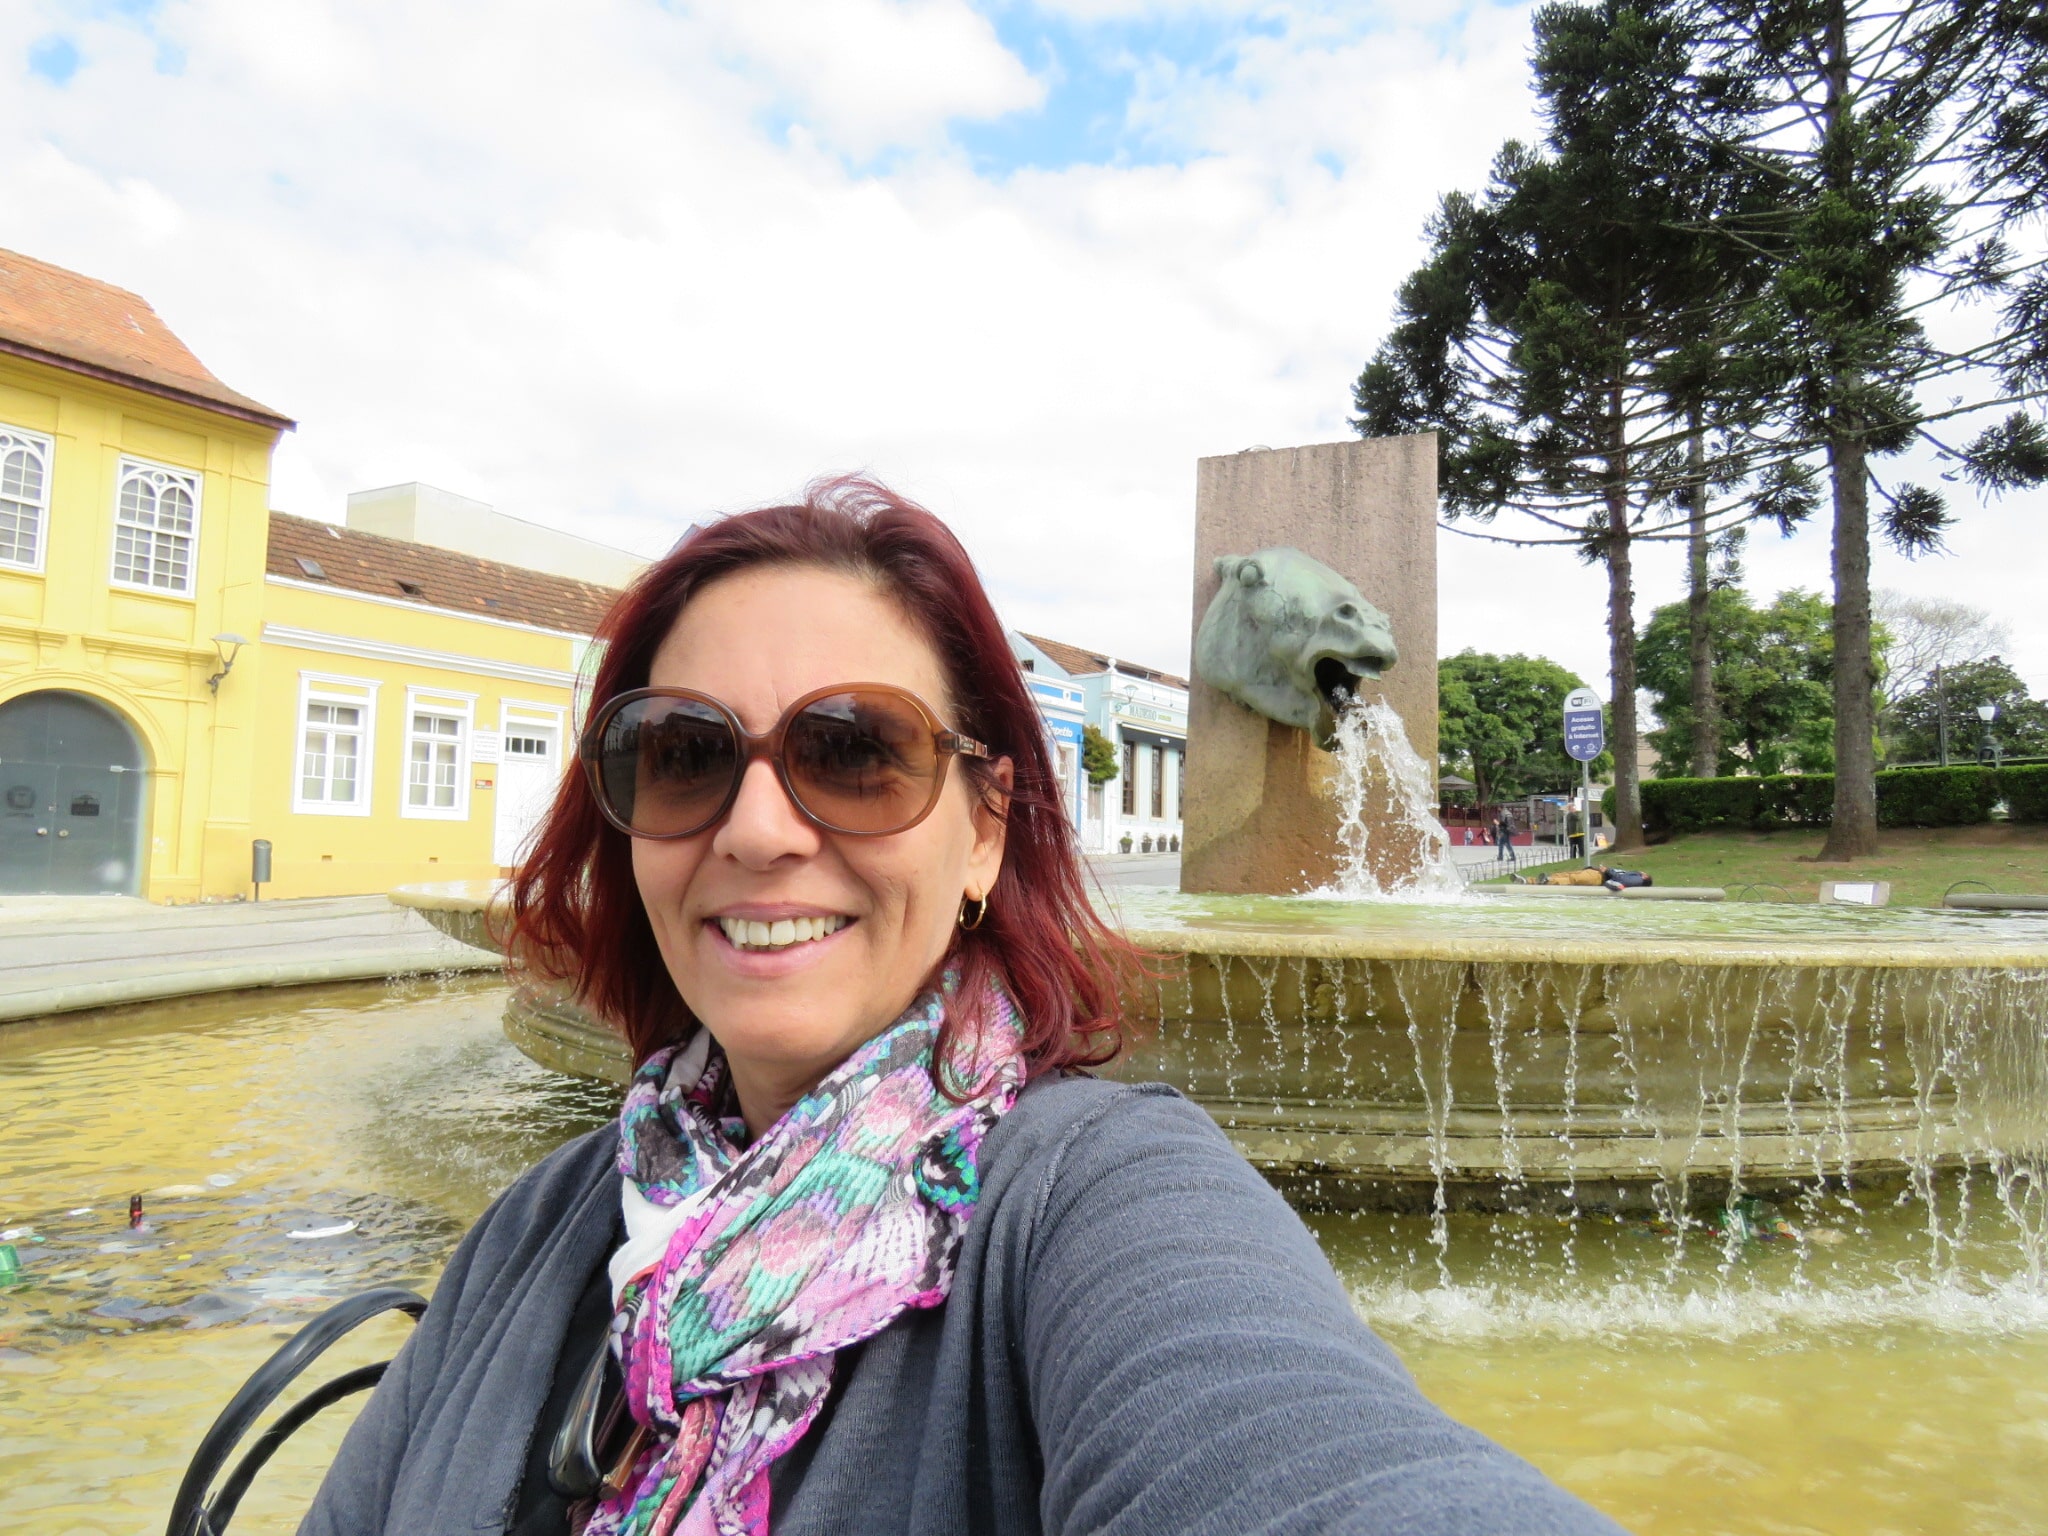 Viajar Sozinha para Curitiba: um guia pra mulher que vai solo